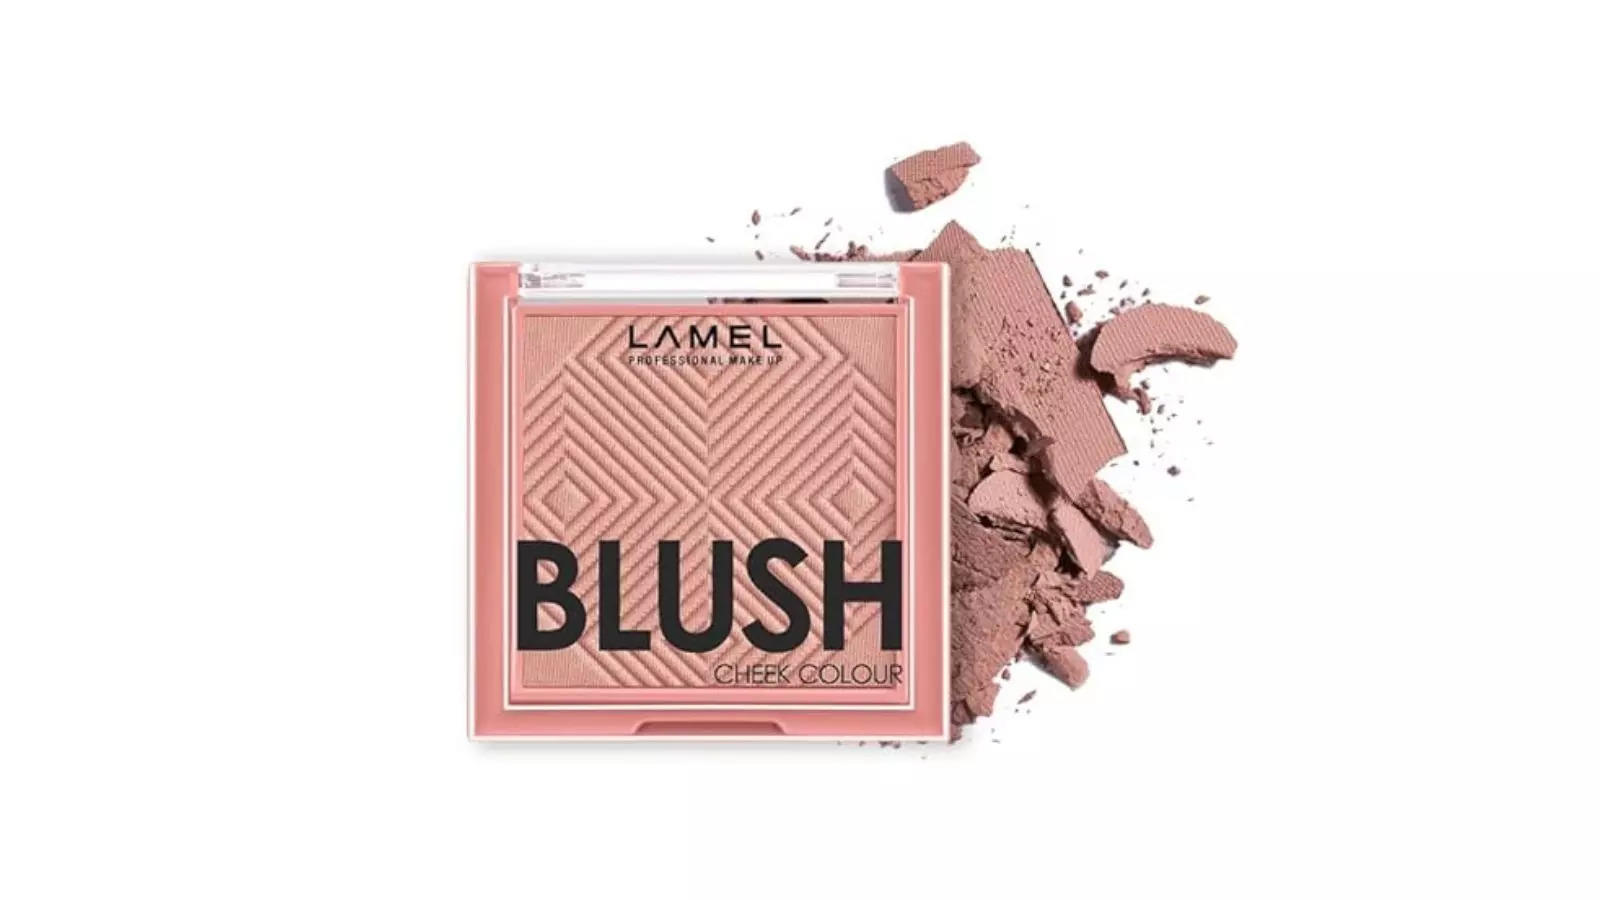 Lamel- Blush cheek colour